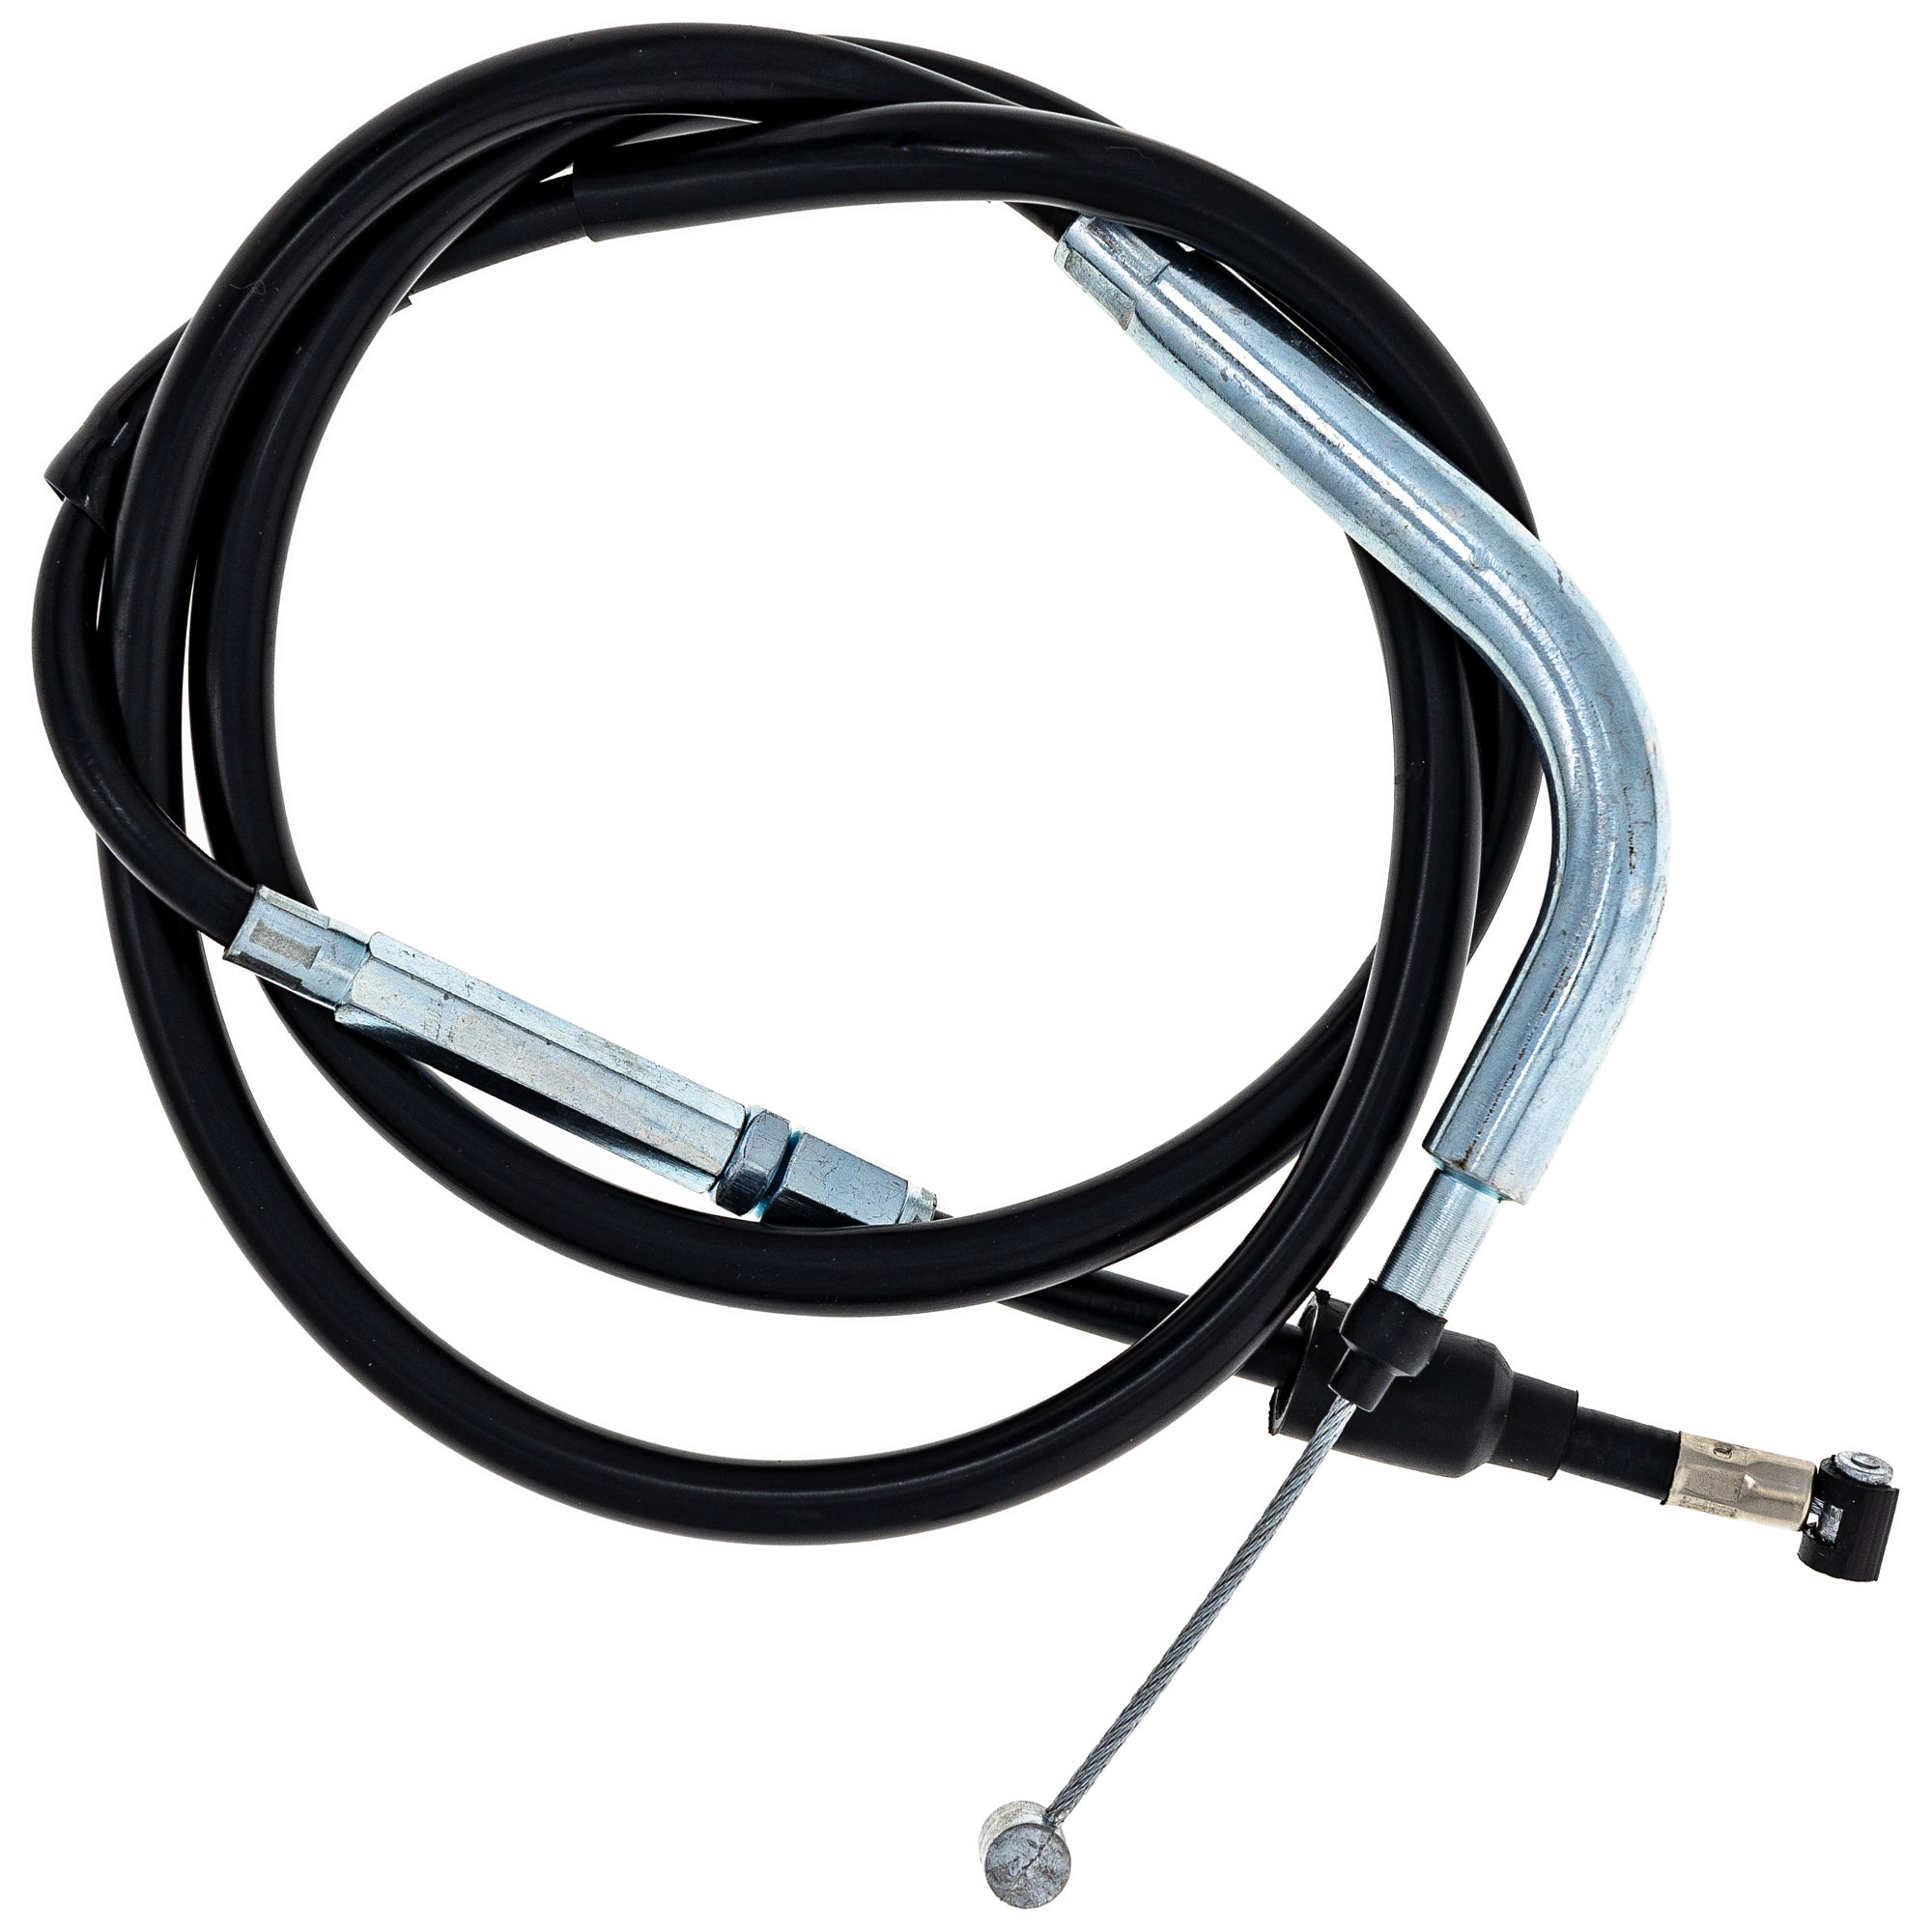 Clutch Cable for zOTHER KLX400R DRZ400SM DRZ400S DRZ400E NICHE 519-CCB2412L